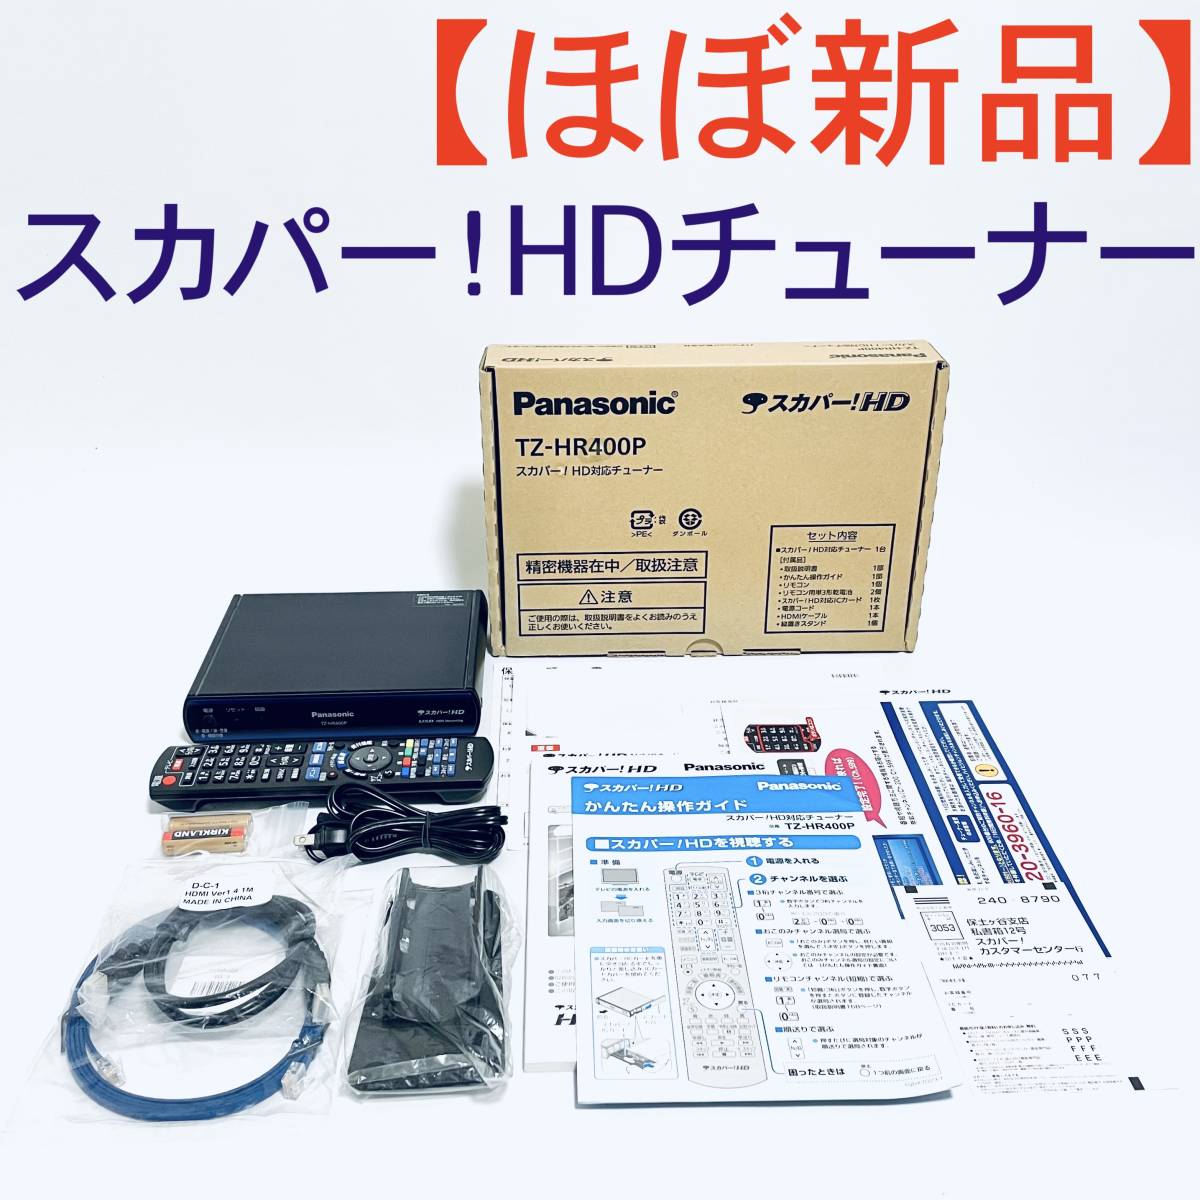 割引購入 【ほぼ新品・ジャンク】スカパーチューナー Panasonic TZ